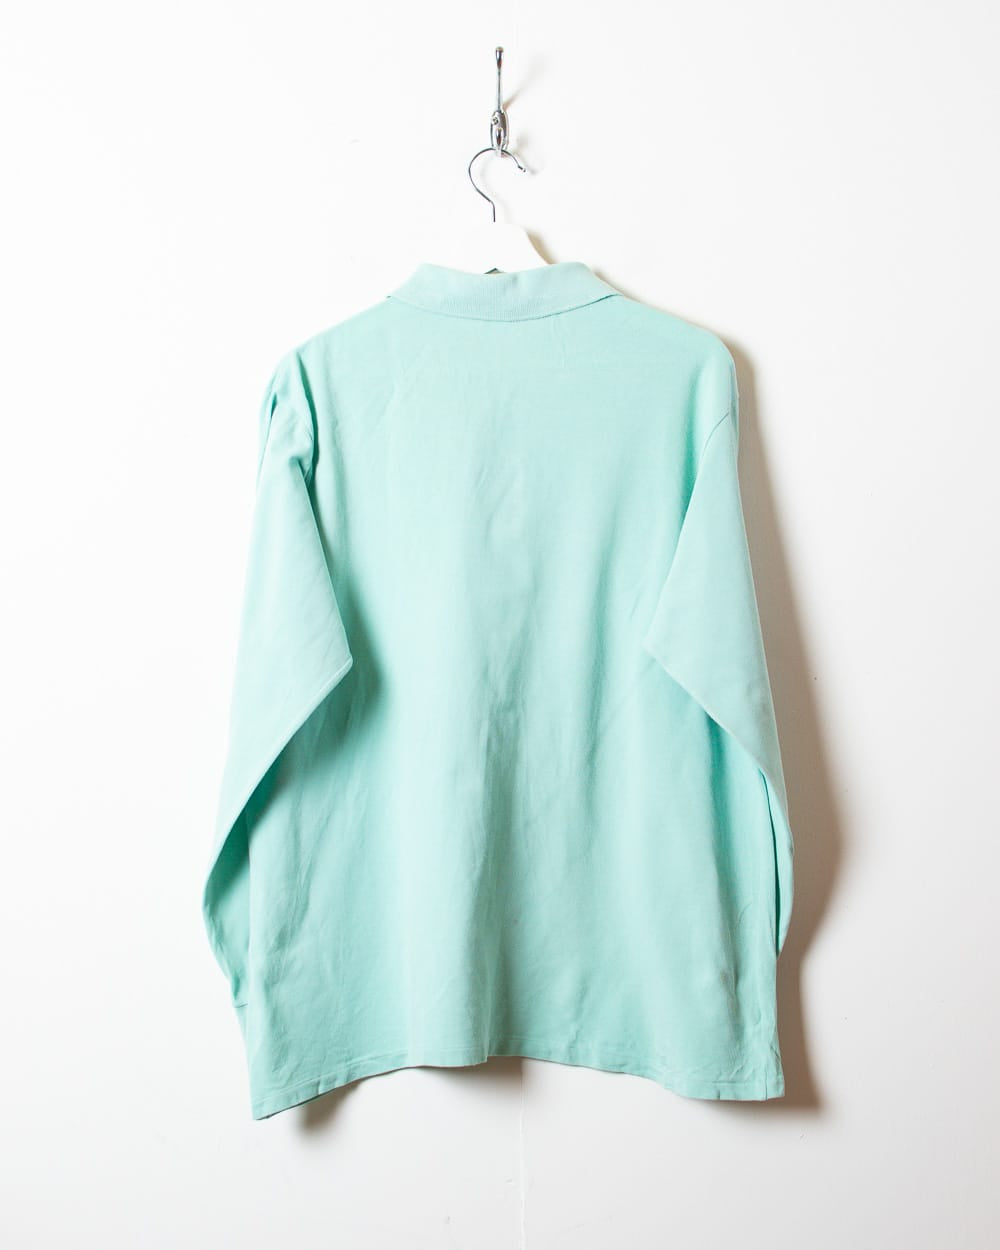 BabyBlue Chemise Lacoste Long Sleeved Polo Shirt - Medium